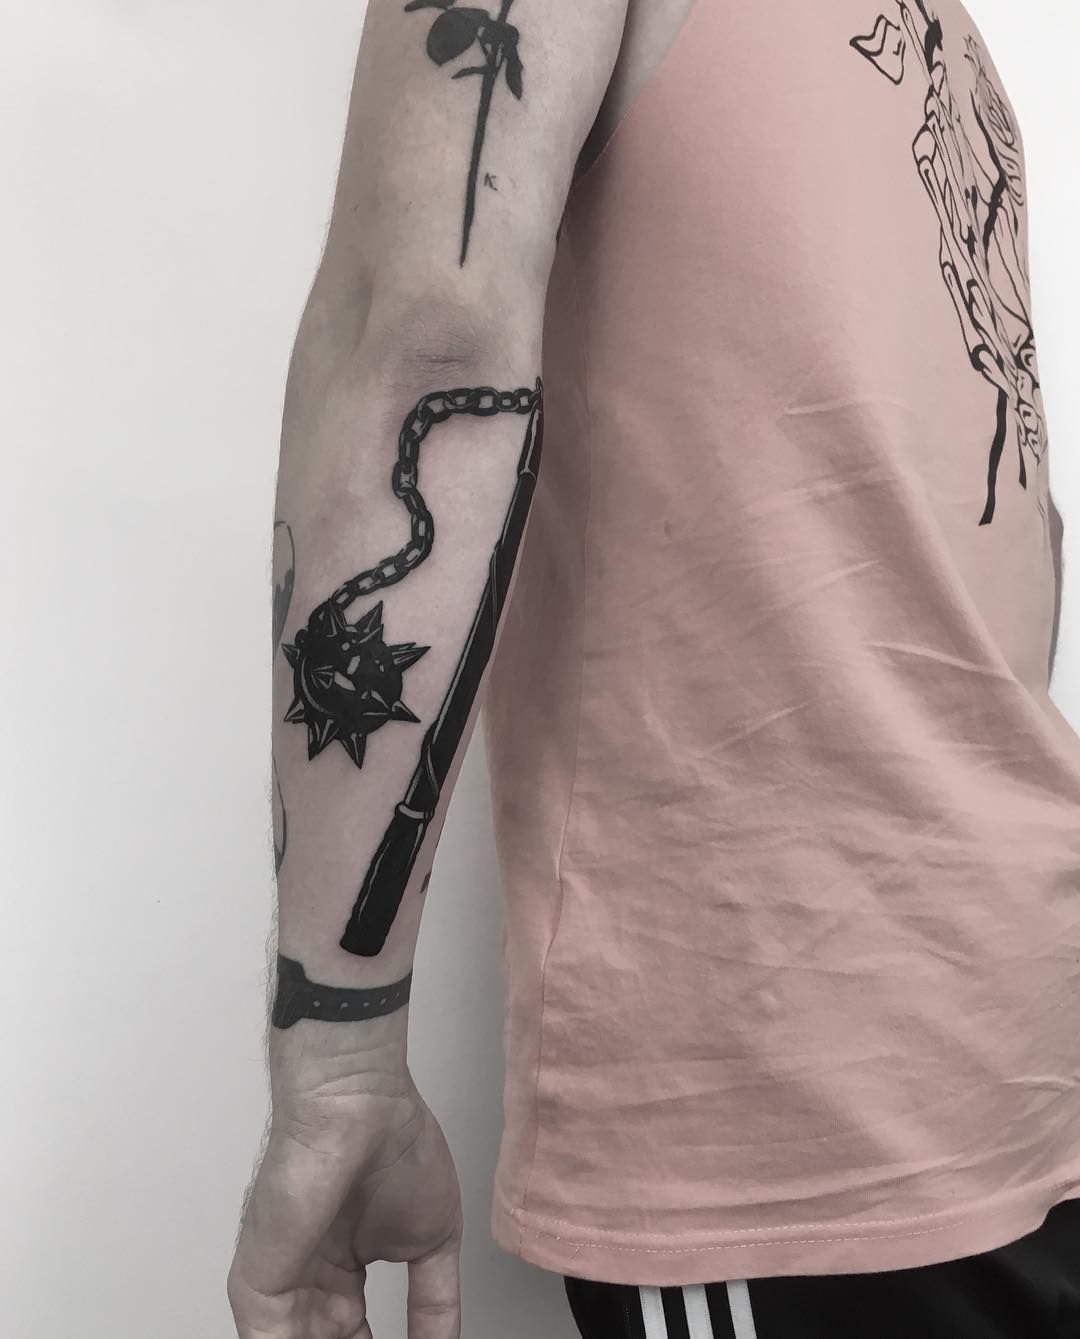 Flail tattoo by Krzysztof Szeszko